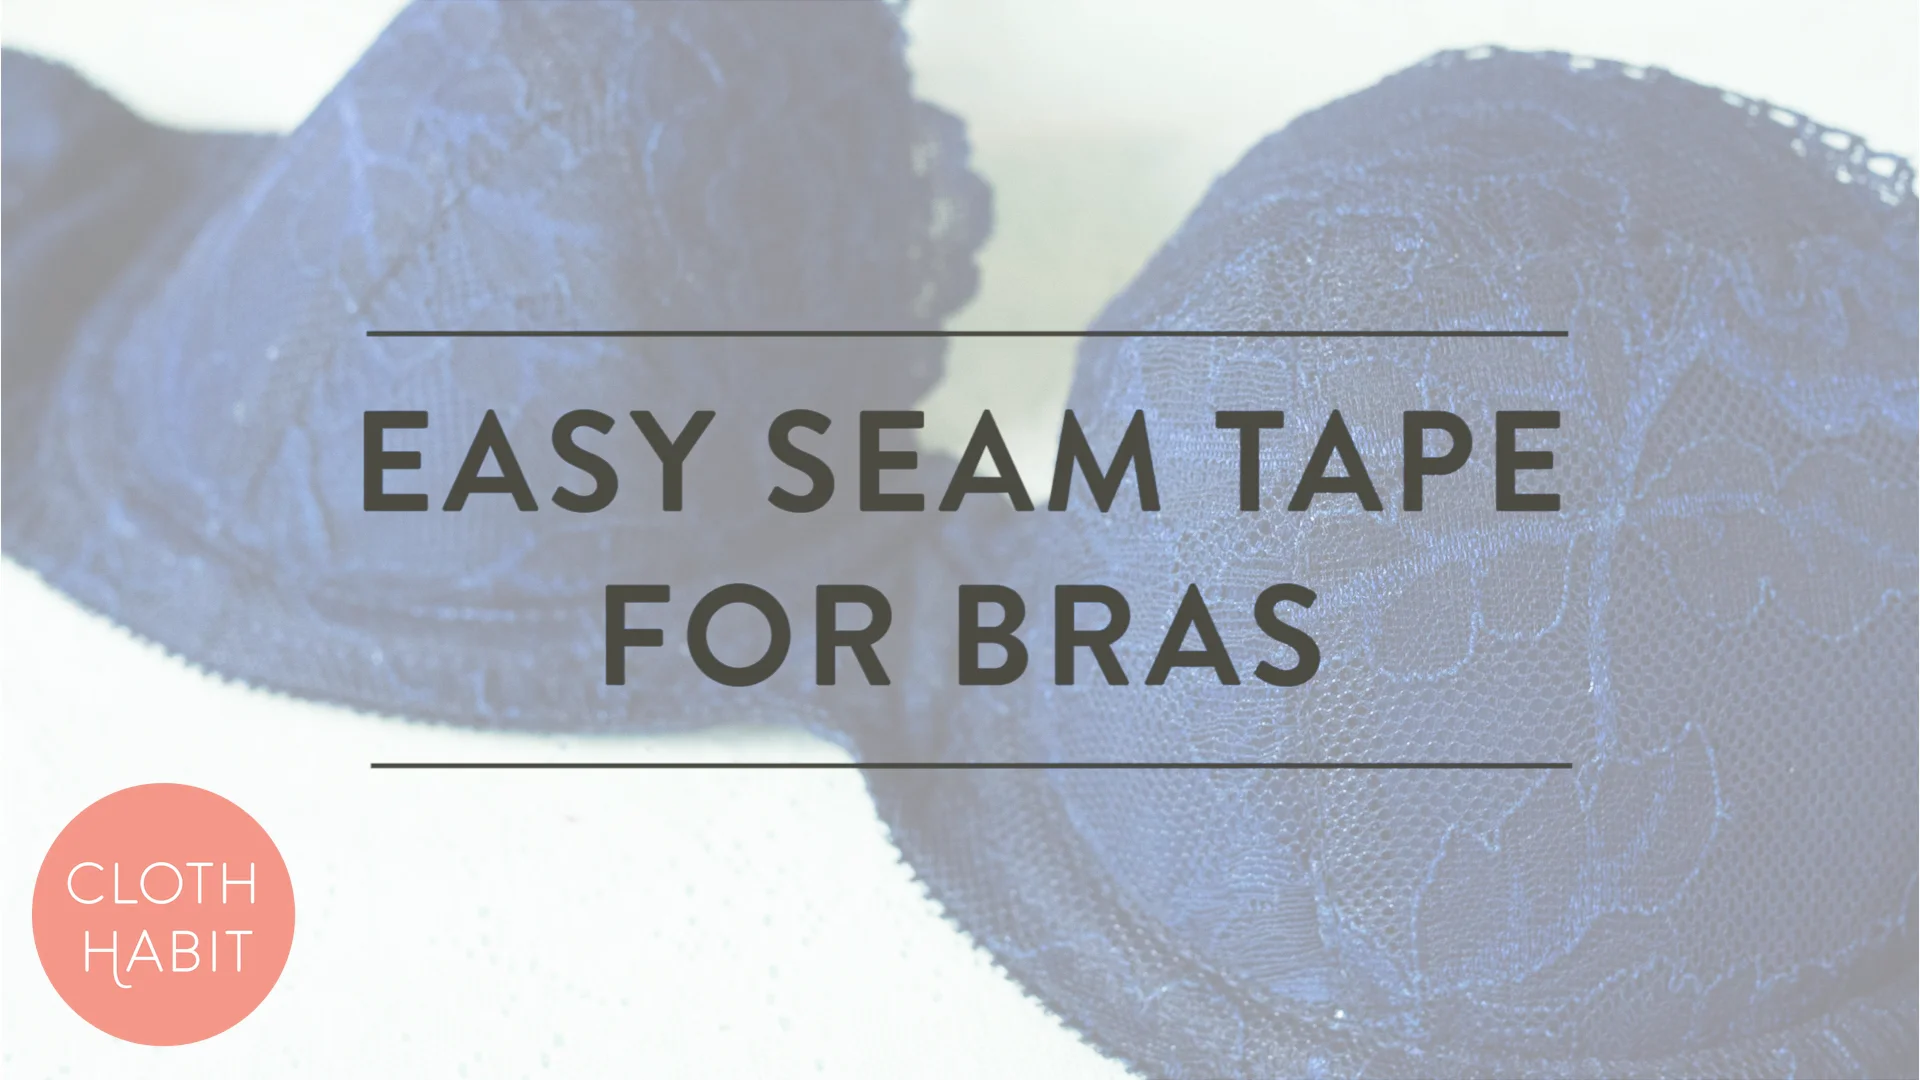 Easy Seam Tape for Bras on Vimeo